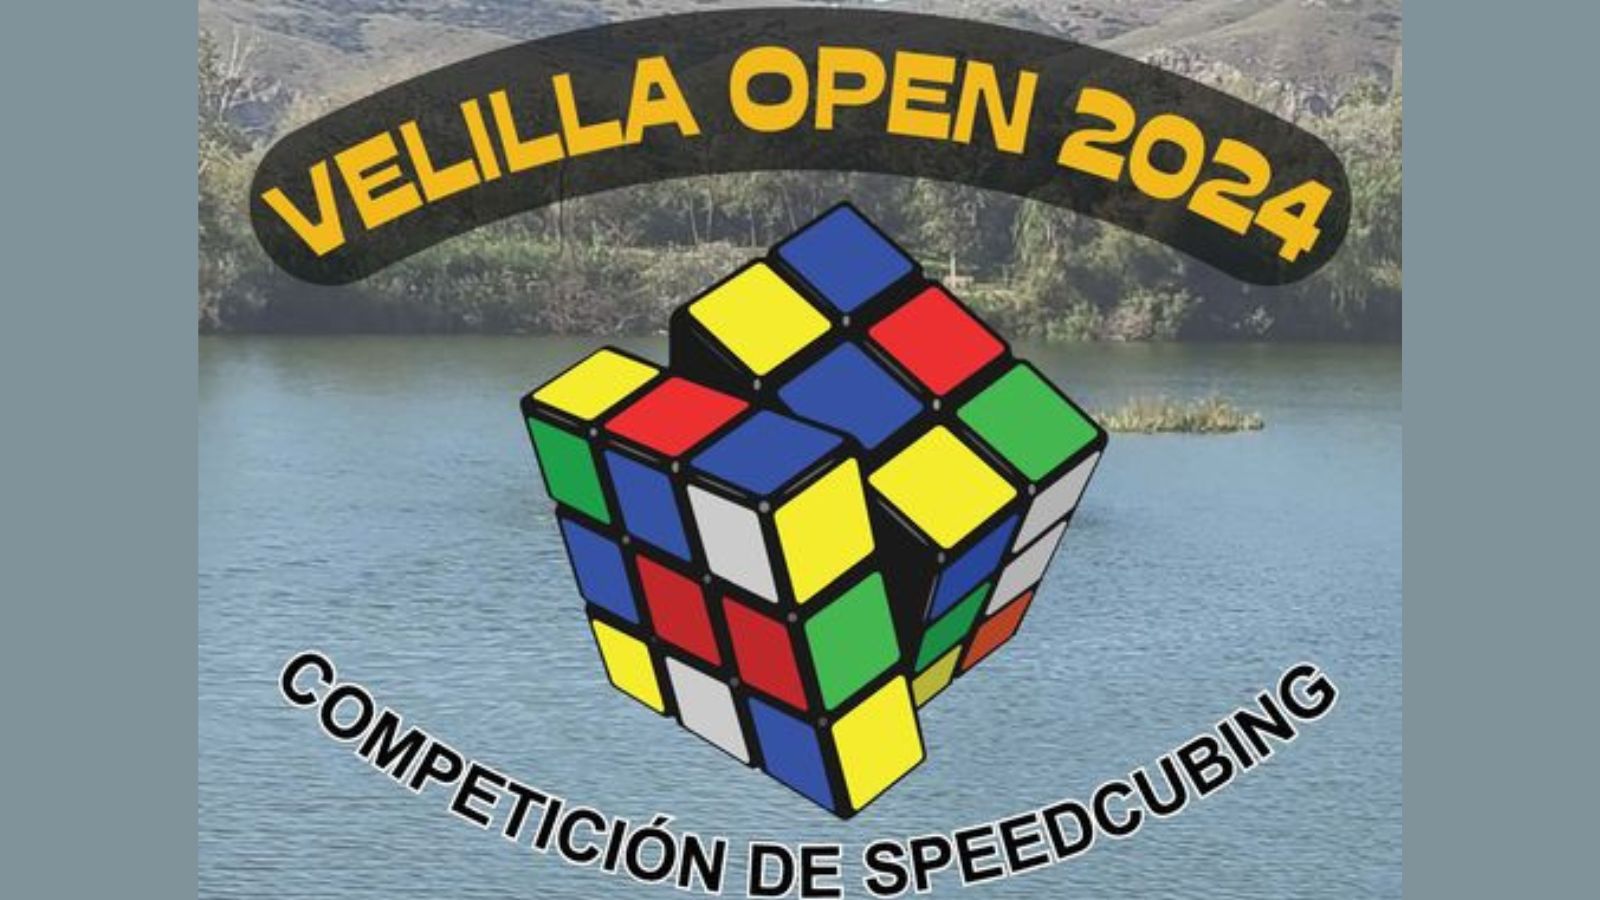 VELILLA OPEN 2024 COMPETICIÓN DE SPEEDCUBING